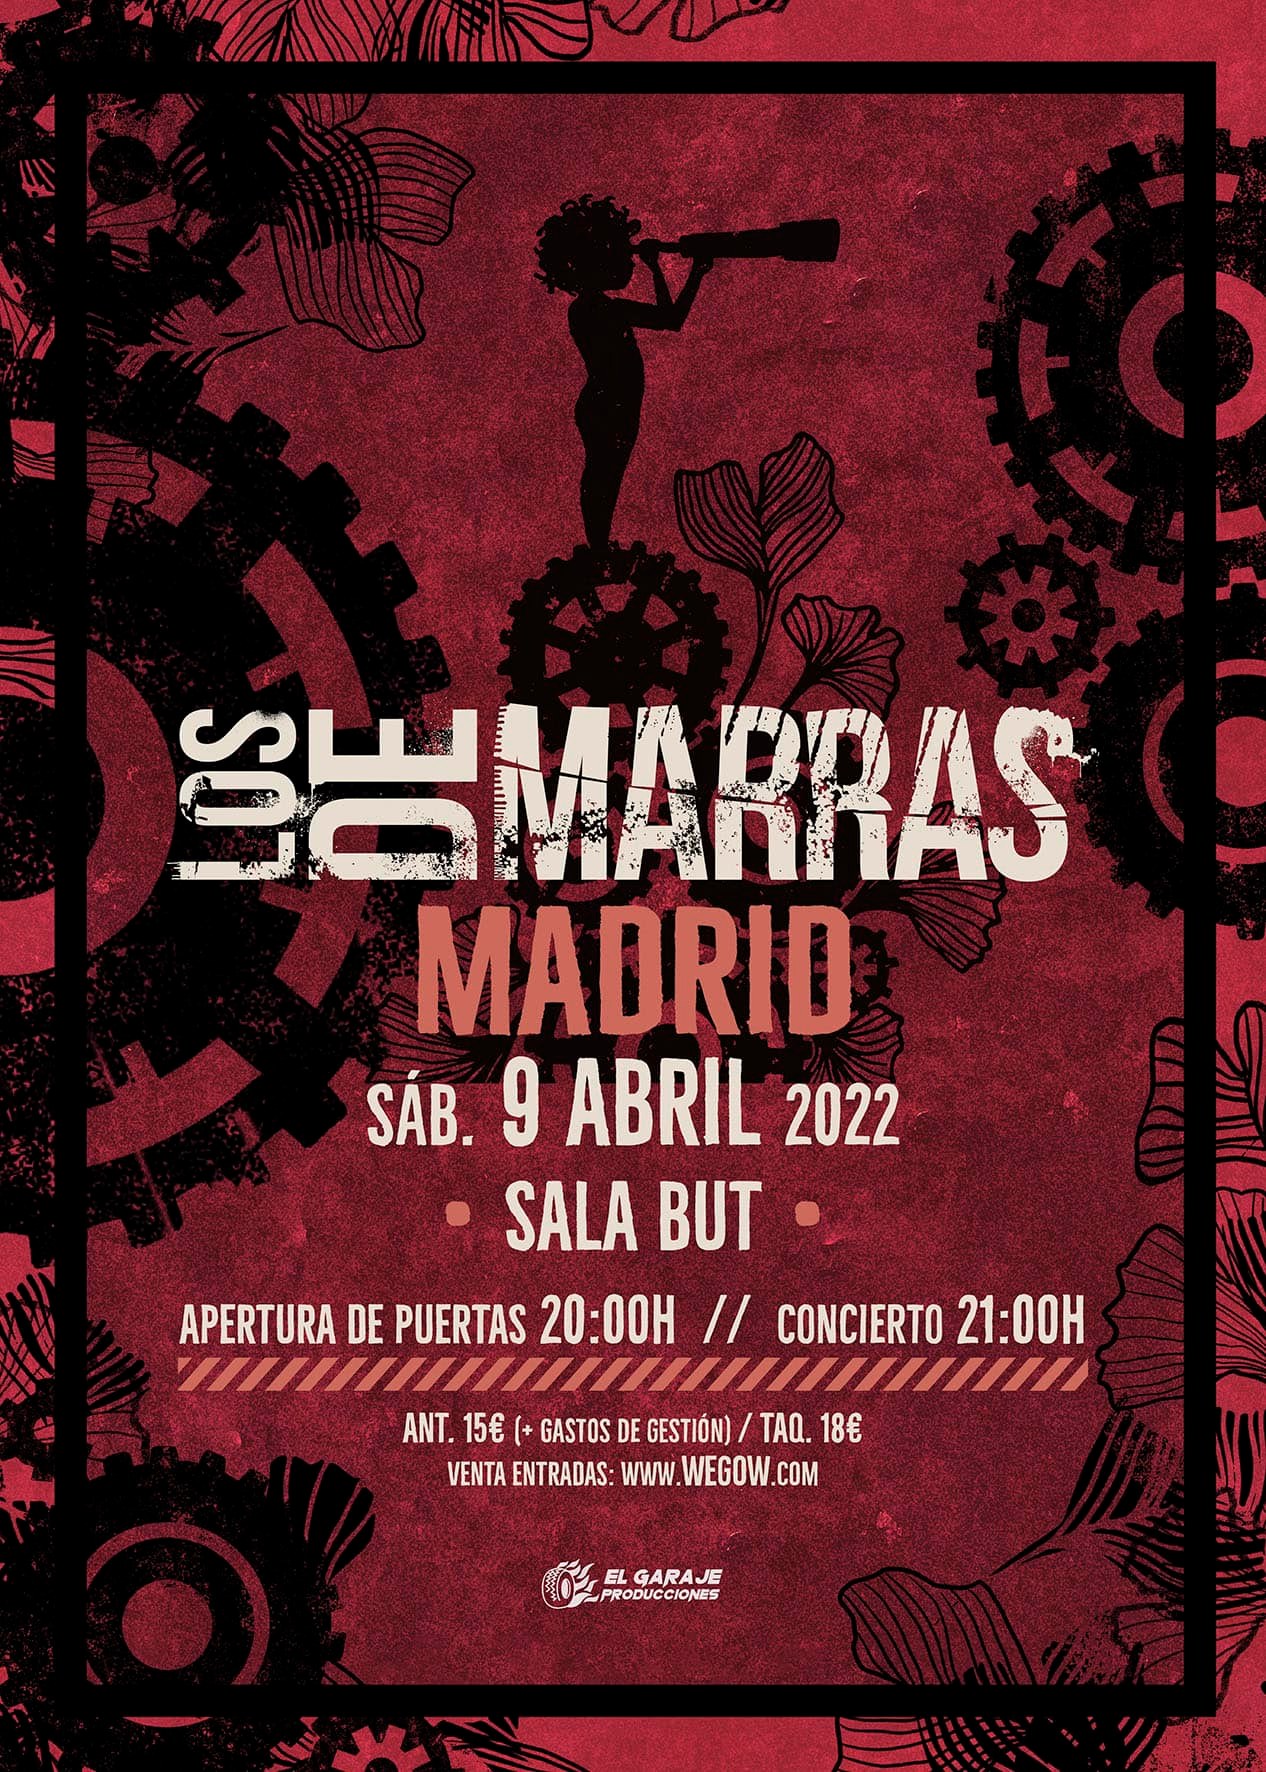 Los de Marras estarán actuando en Madrid el 9 de abril